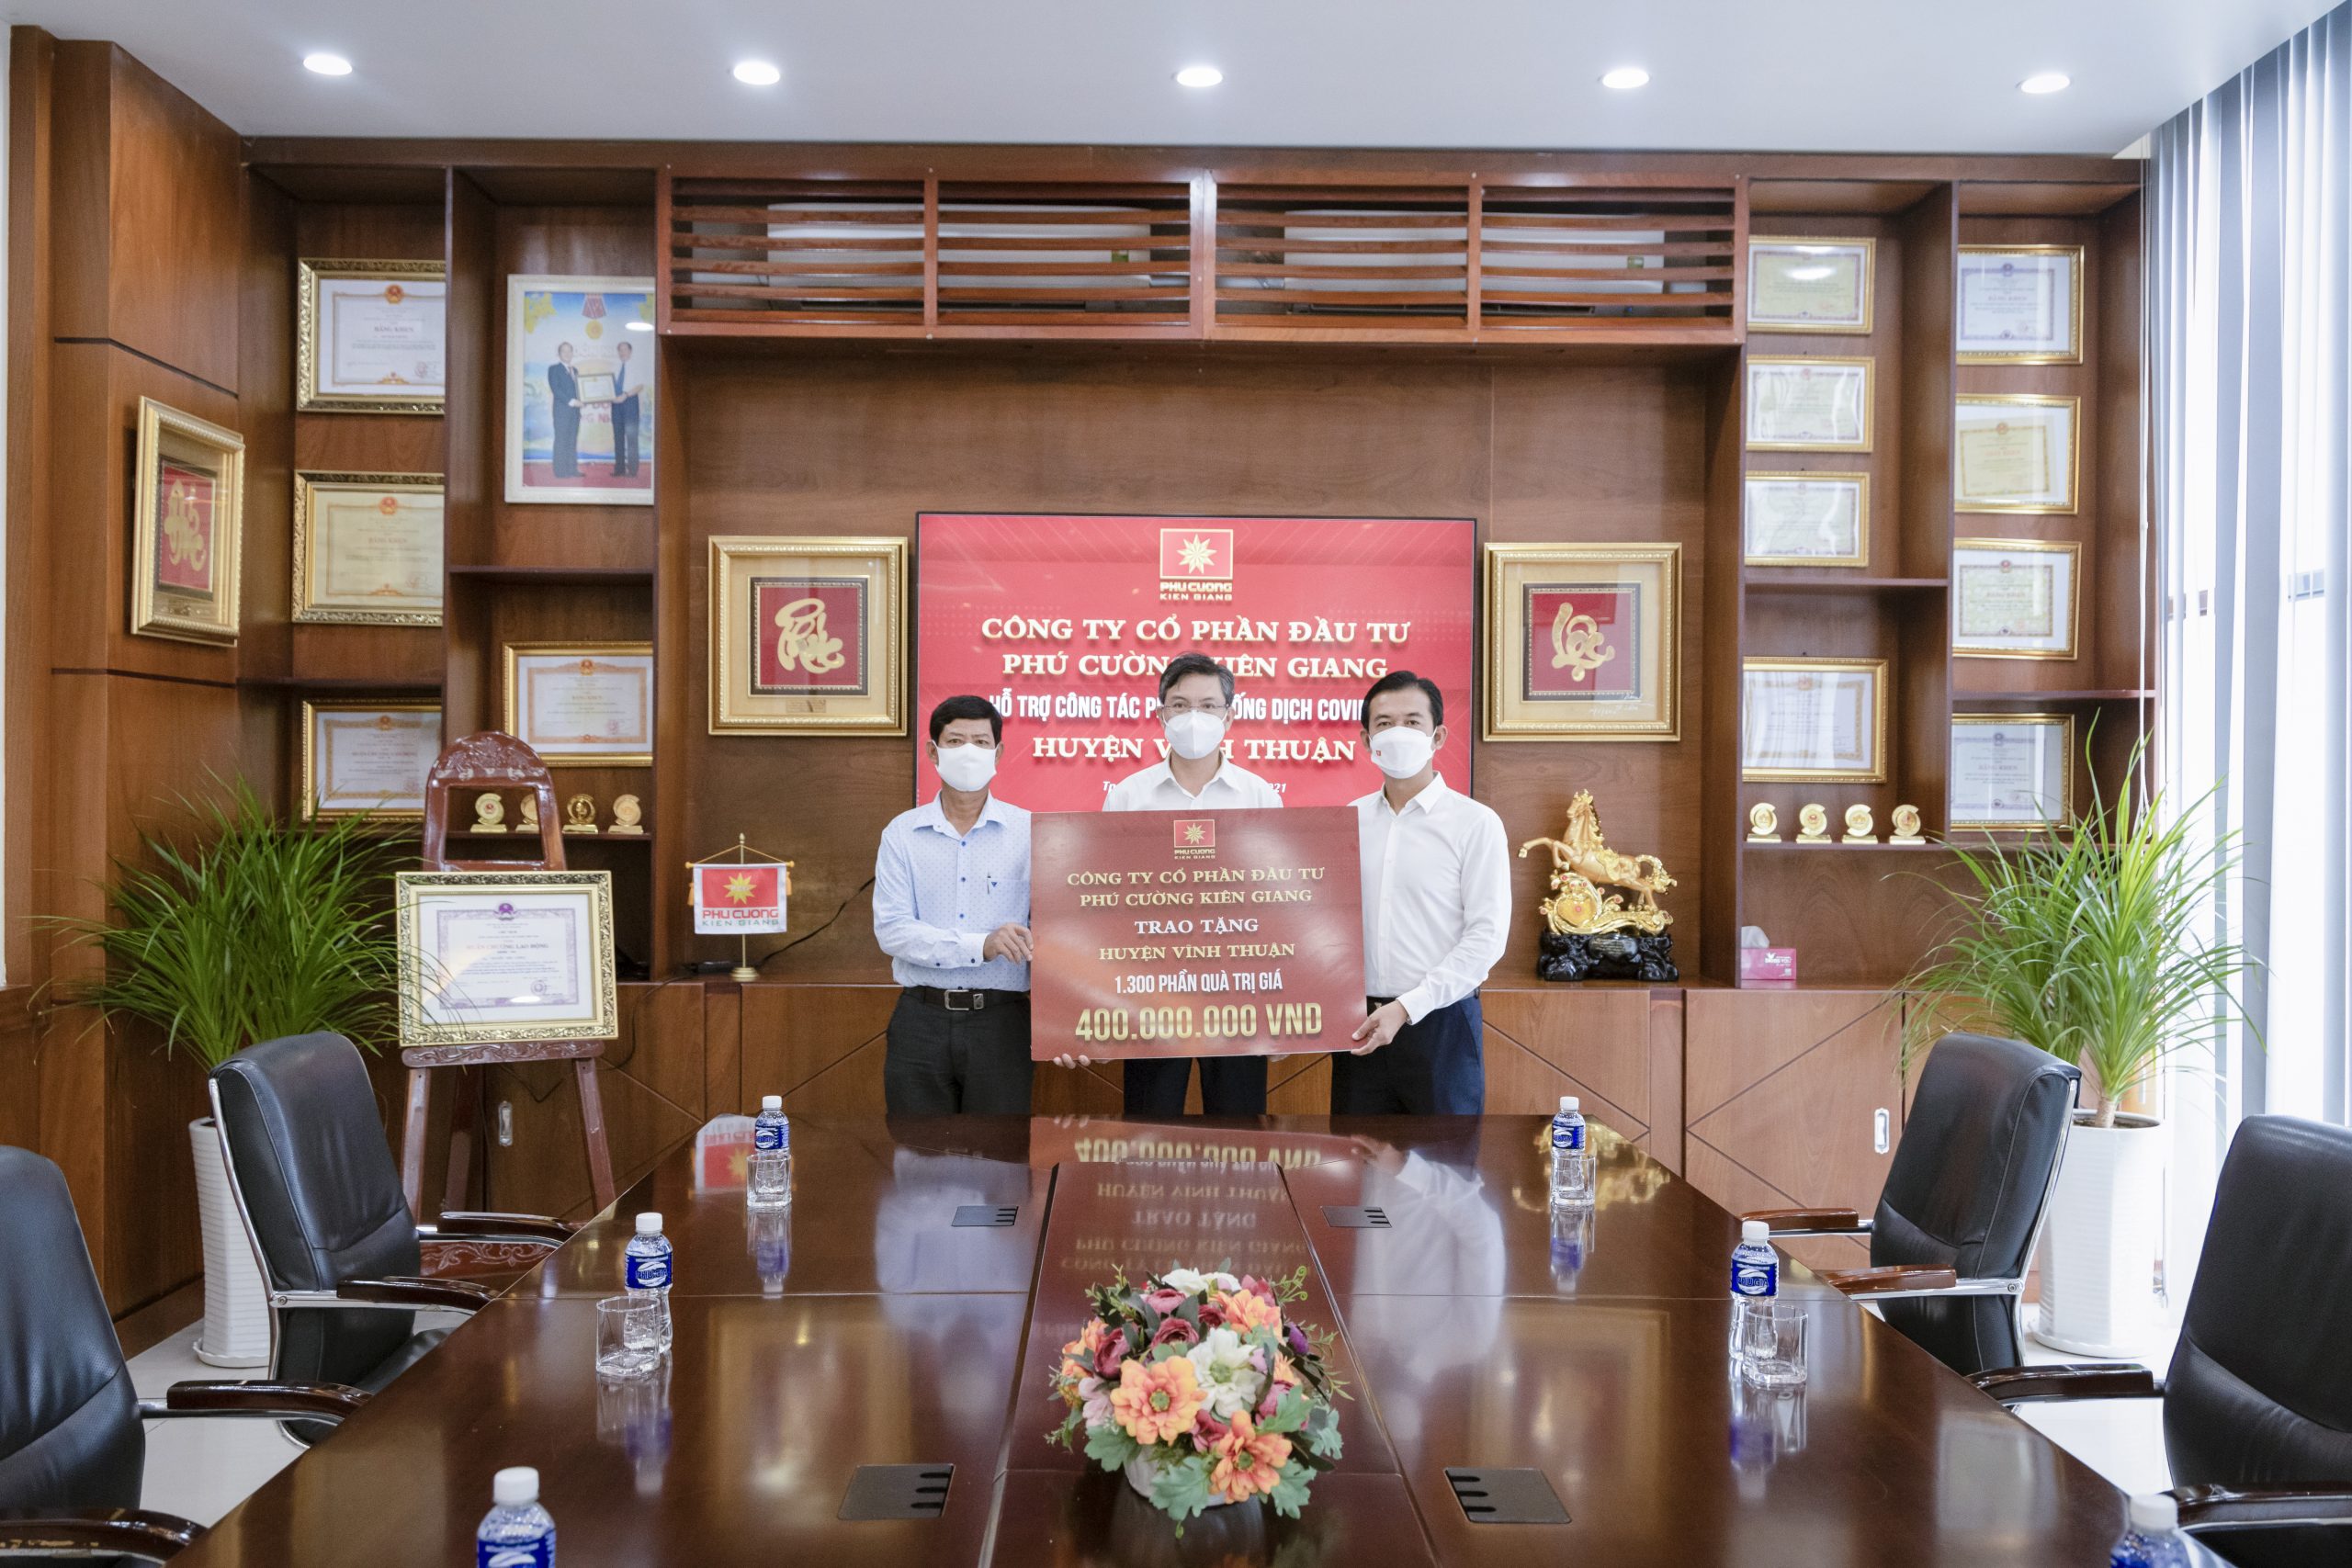 Phú Cường Kiên Giang ủng hộ hơn 6 tỷ đồng phòng, chống dịch COVID-19 tại địa phương